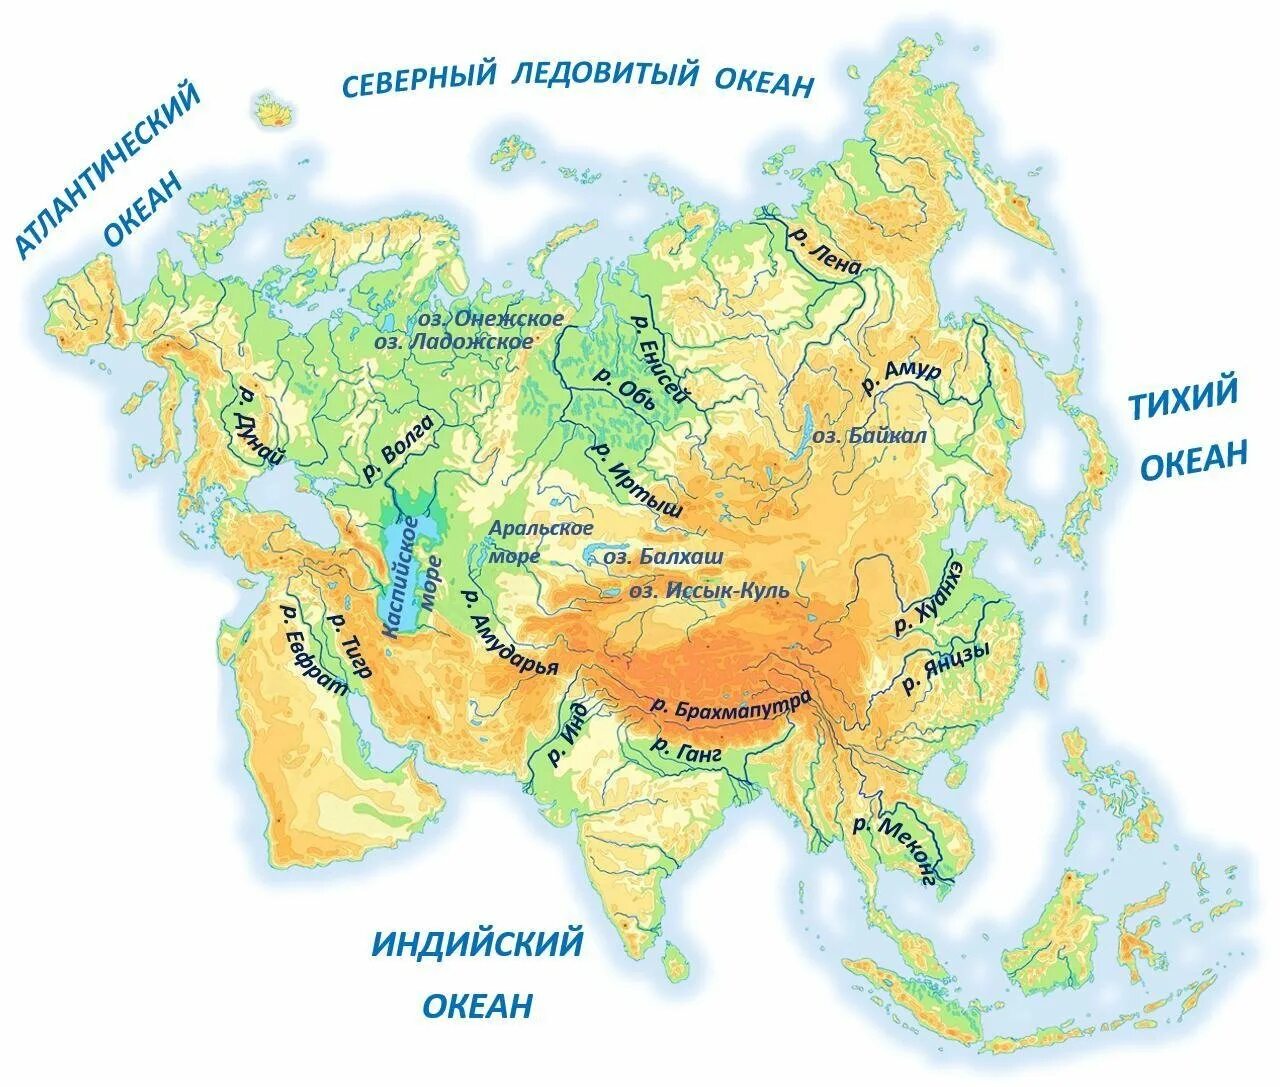 Основные черты внутренних вод евразии. Основные реки Евразии на карте. Реки Азии на карте. Реки на материке Евразия на карте. Крупные реки Евразии на карте.